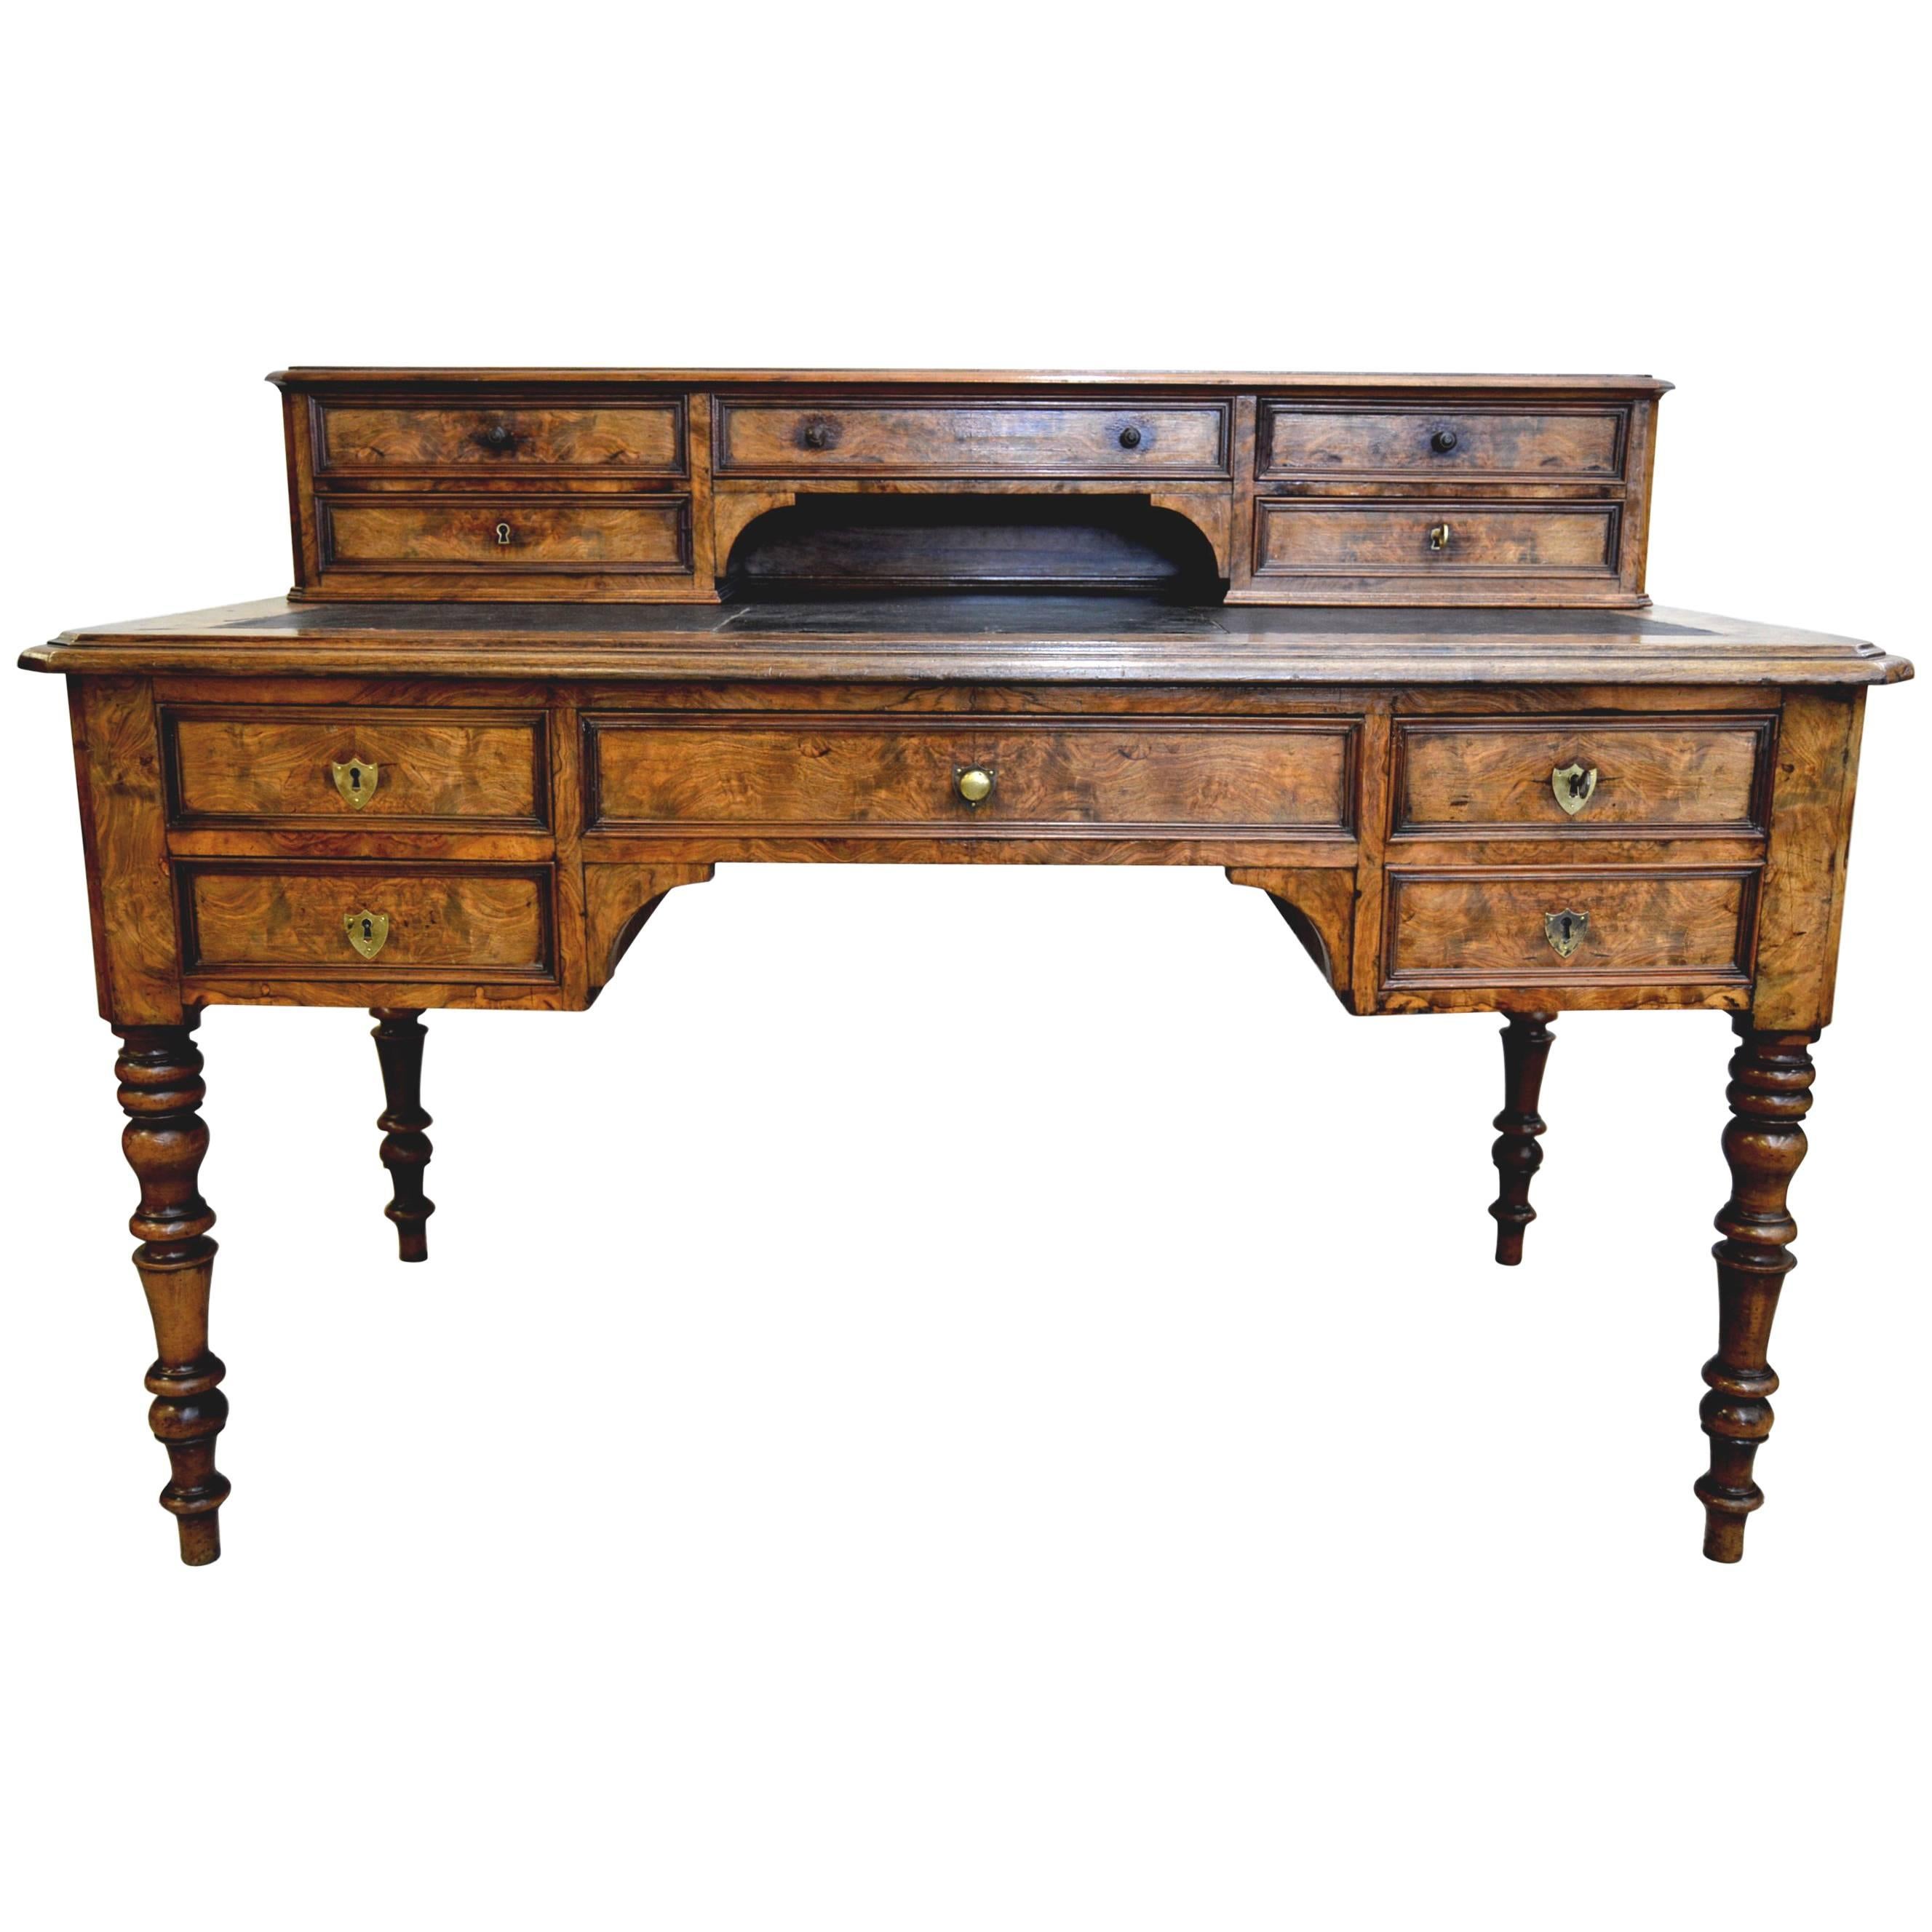 Gorgeous Louis-Philippe Period Desk "à gradins"